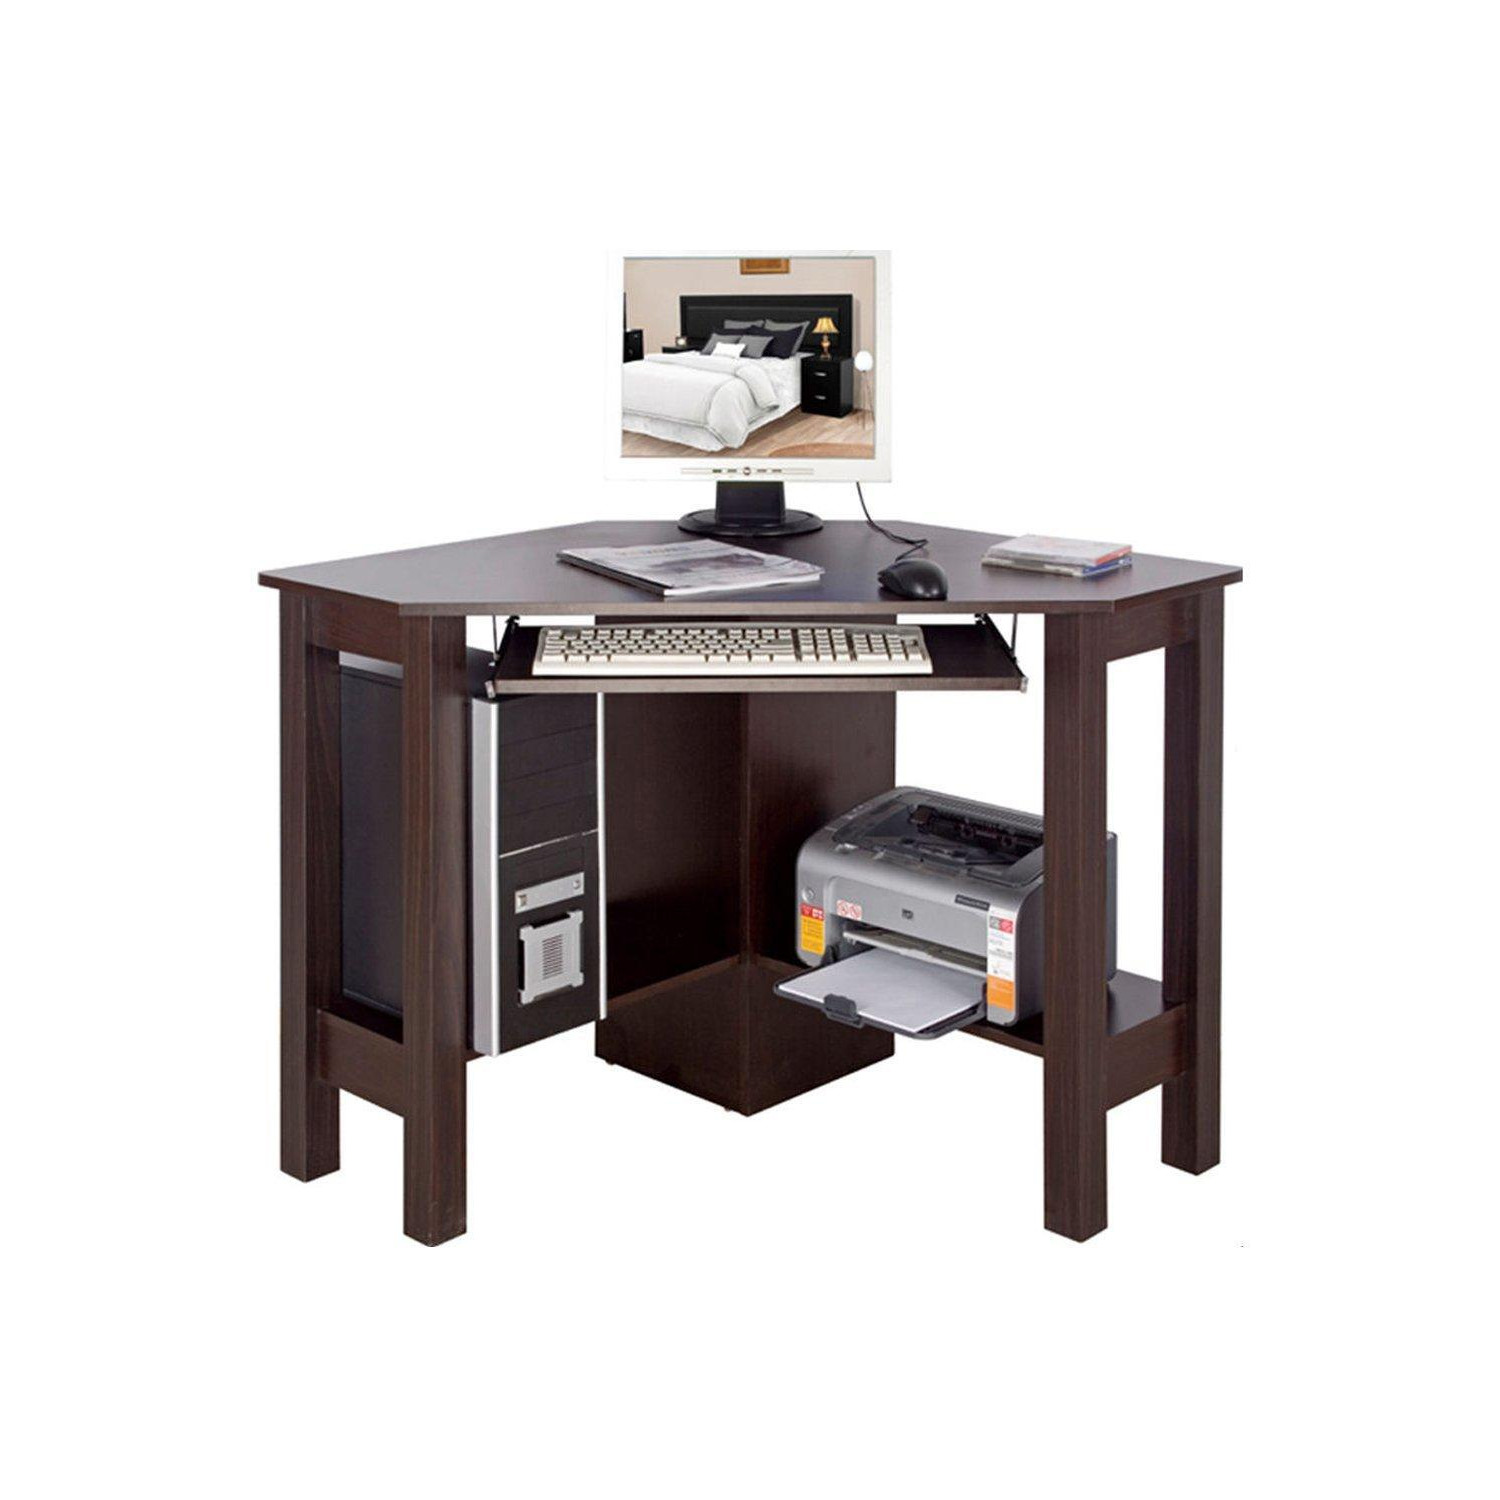 'Horner' - Corner Office Desk  Computer Workstation - Walnut - image 1